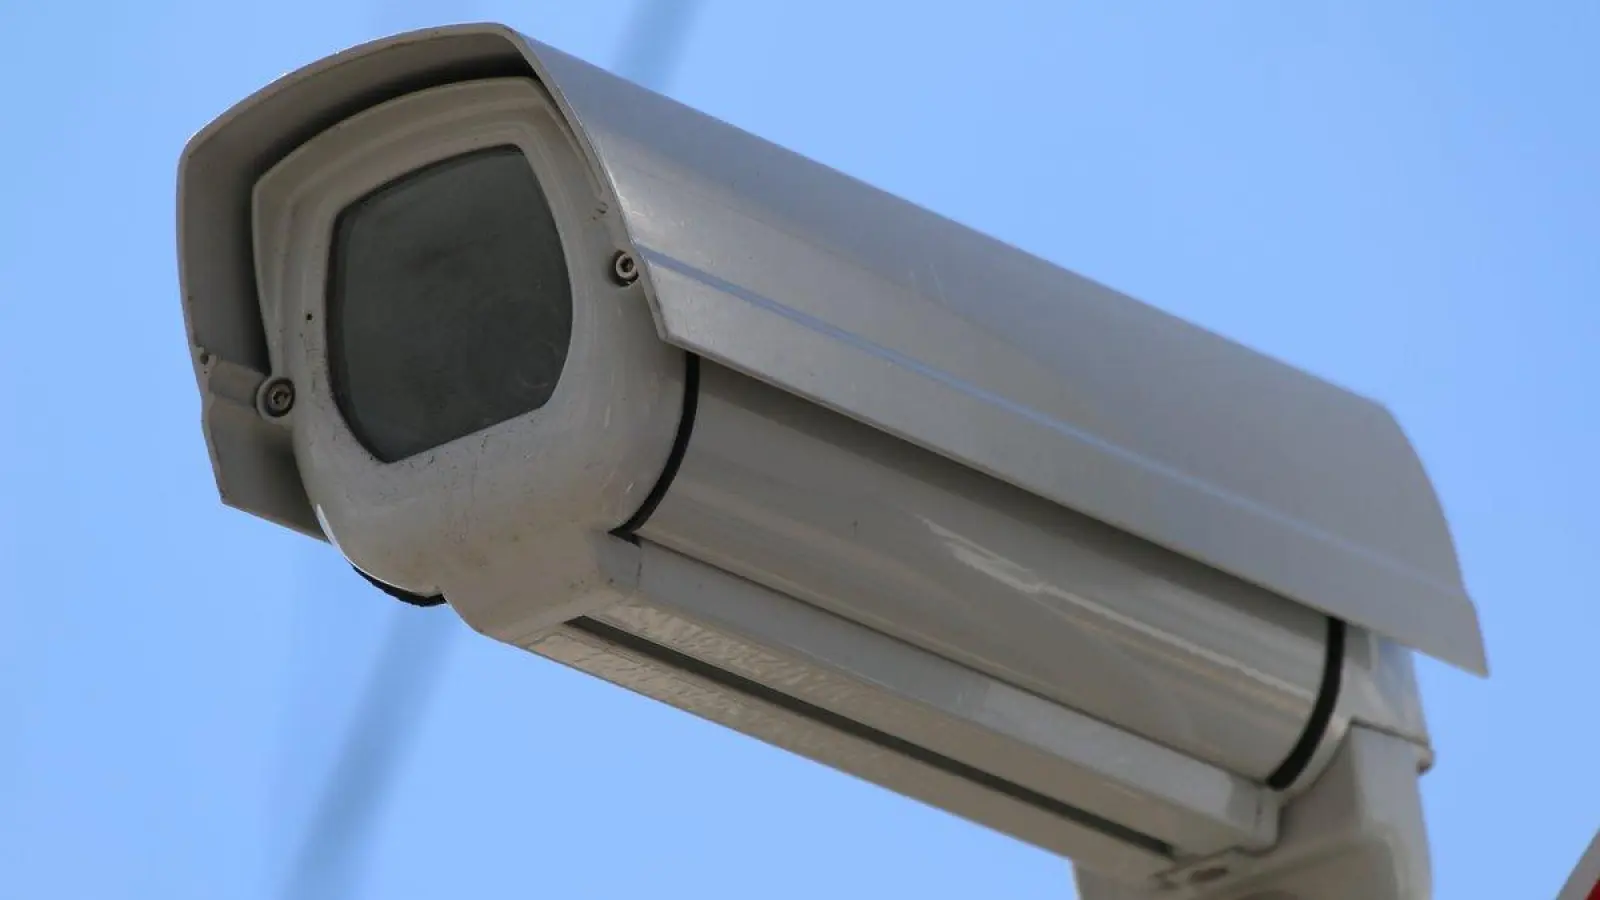 Eine Videoüberwachung im öffentlichen Raum soll es in Augsburg zunächst nicht geben. Für den Königsplatz, an dem es bislang lediglich Stadtwerke-Kameras für die Verkehrsüberwachung gibt, könnte sich dies aber in Zukunft ändern. (Foto: Janina Funk)